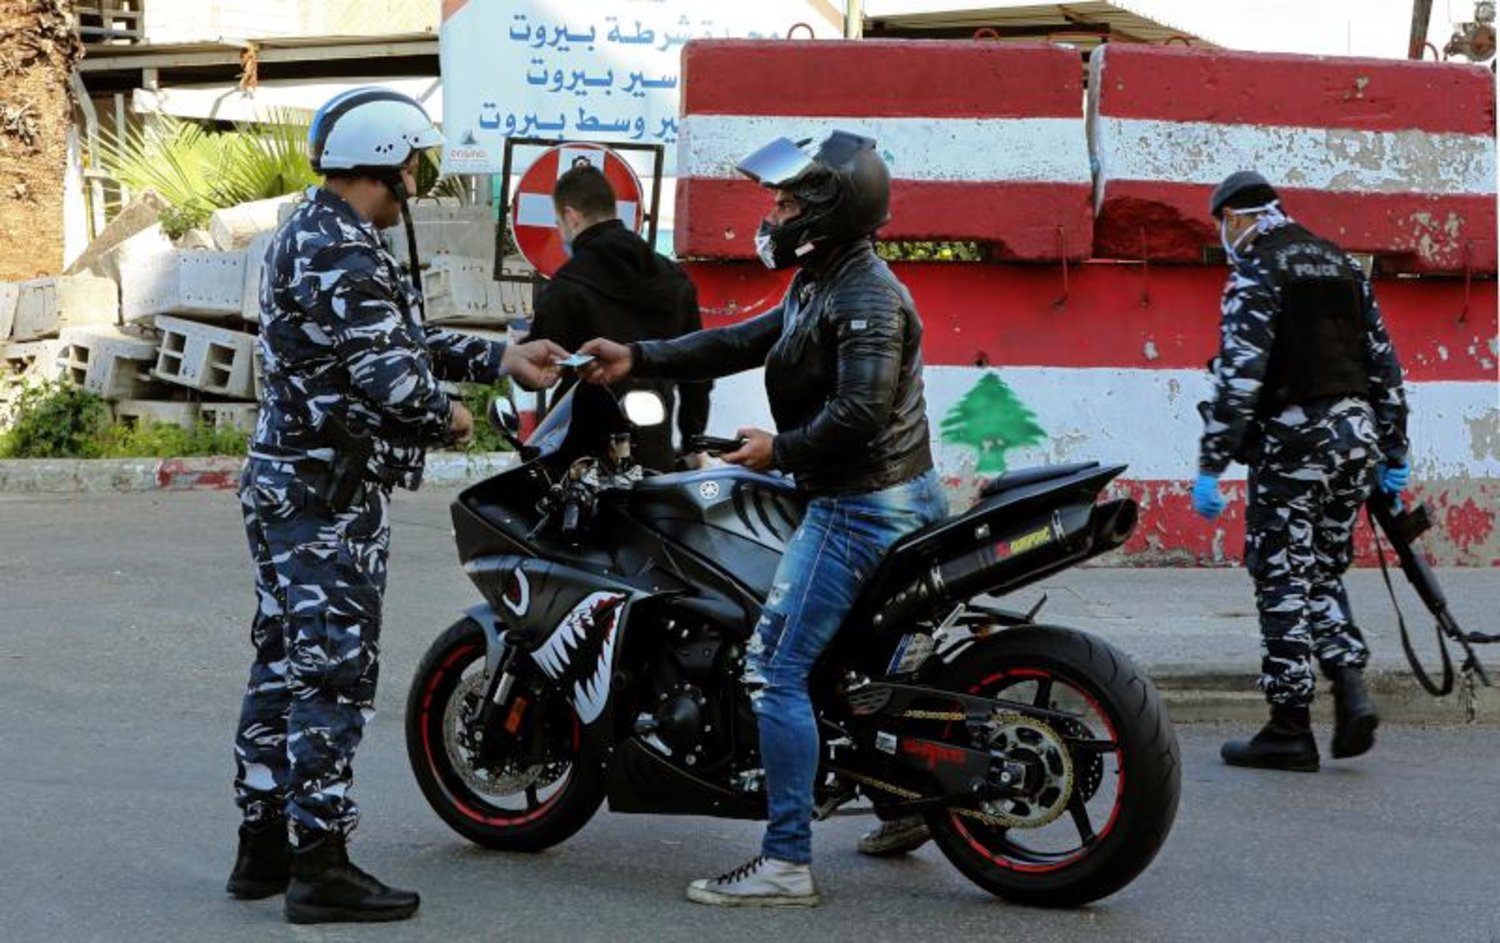 ضابط شرطة يغرّم قائد دراجة نارية في بيروت لخرقه القرارات الاحترازية لمكافحة كورونا (أ.ف.ب)